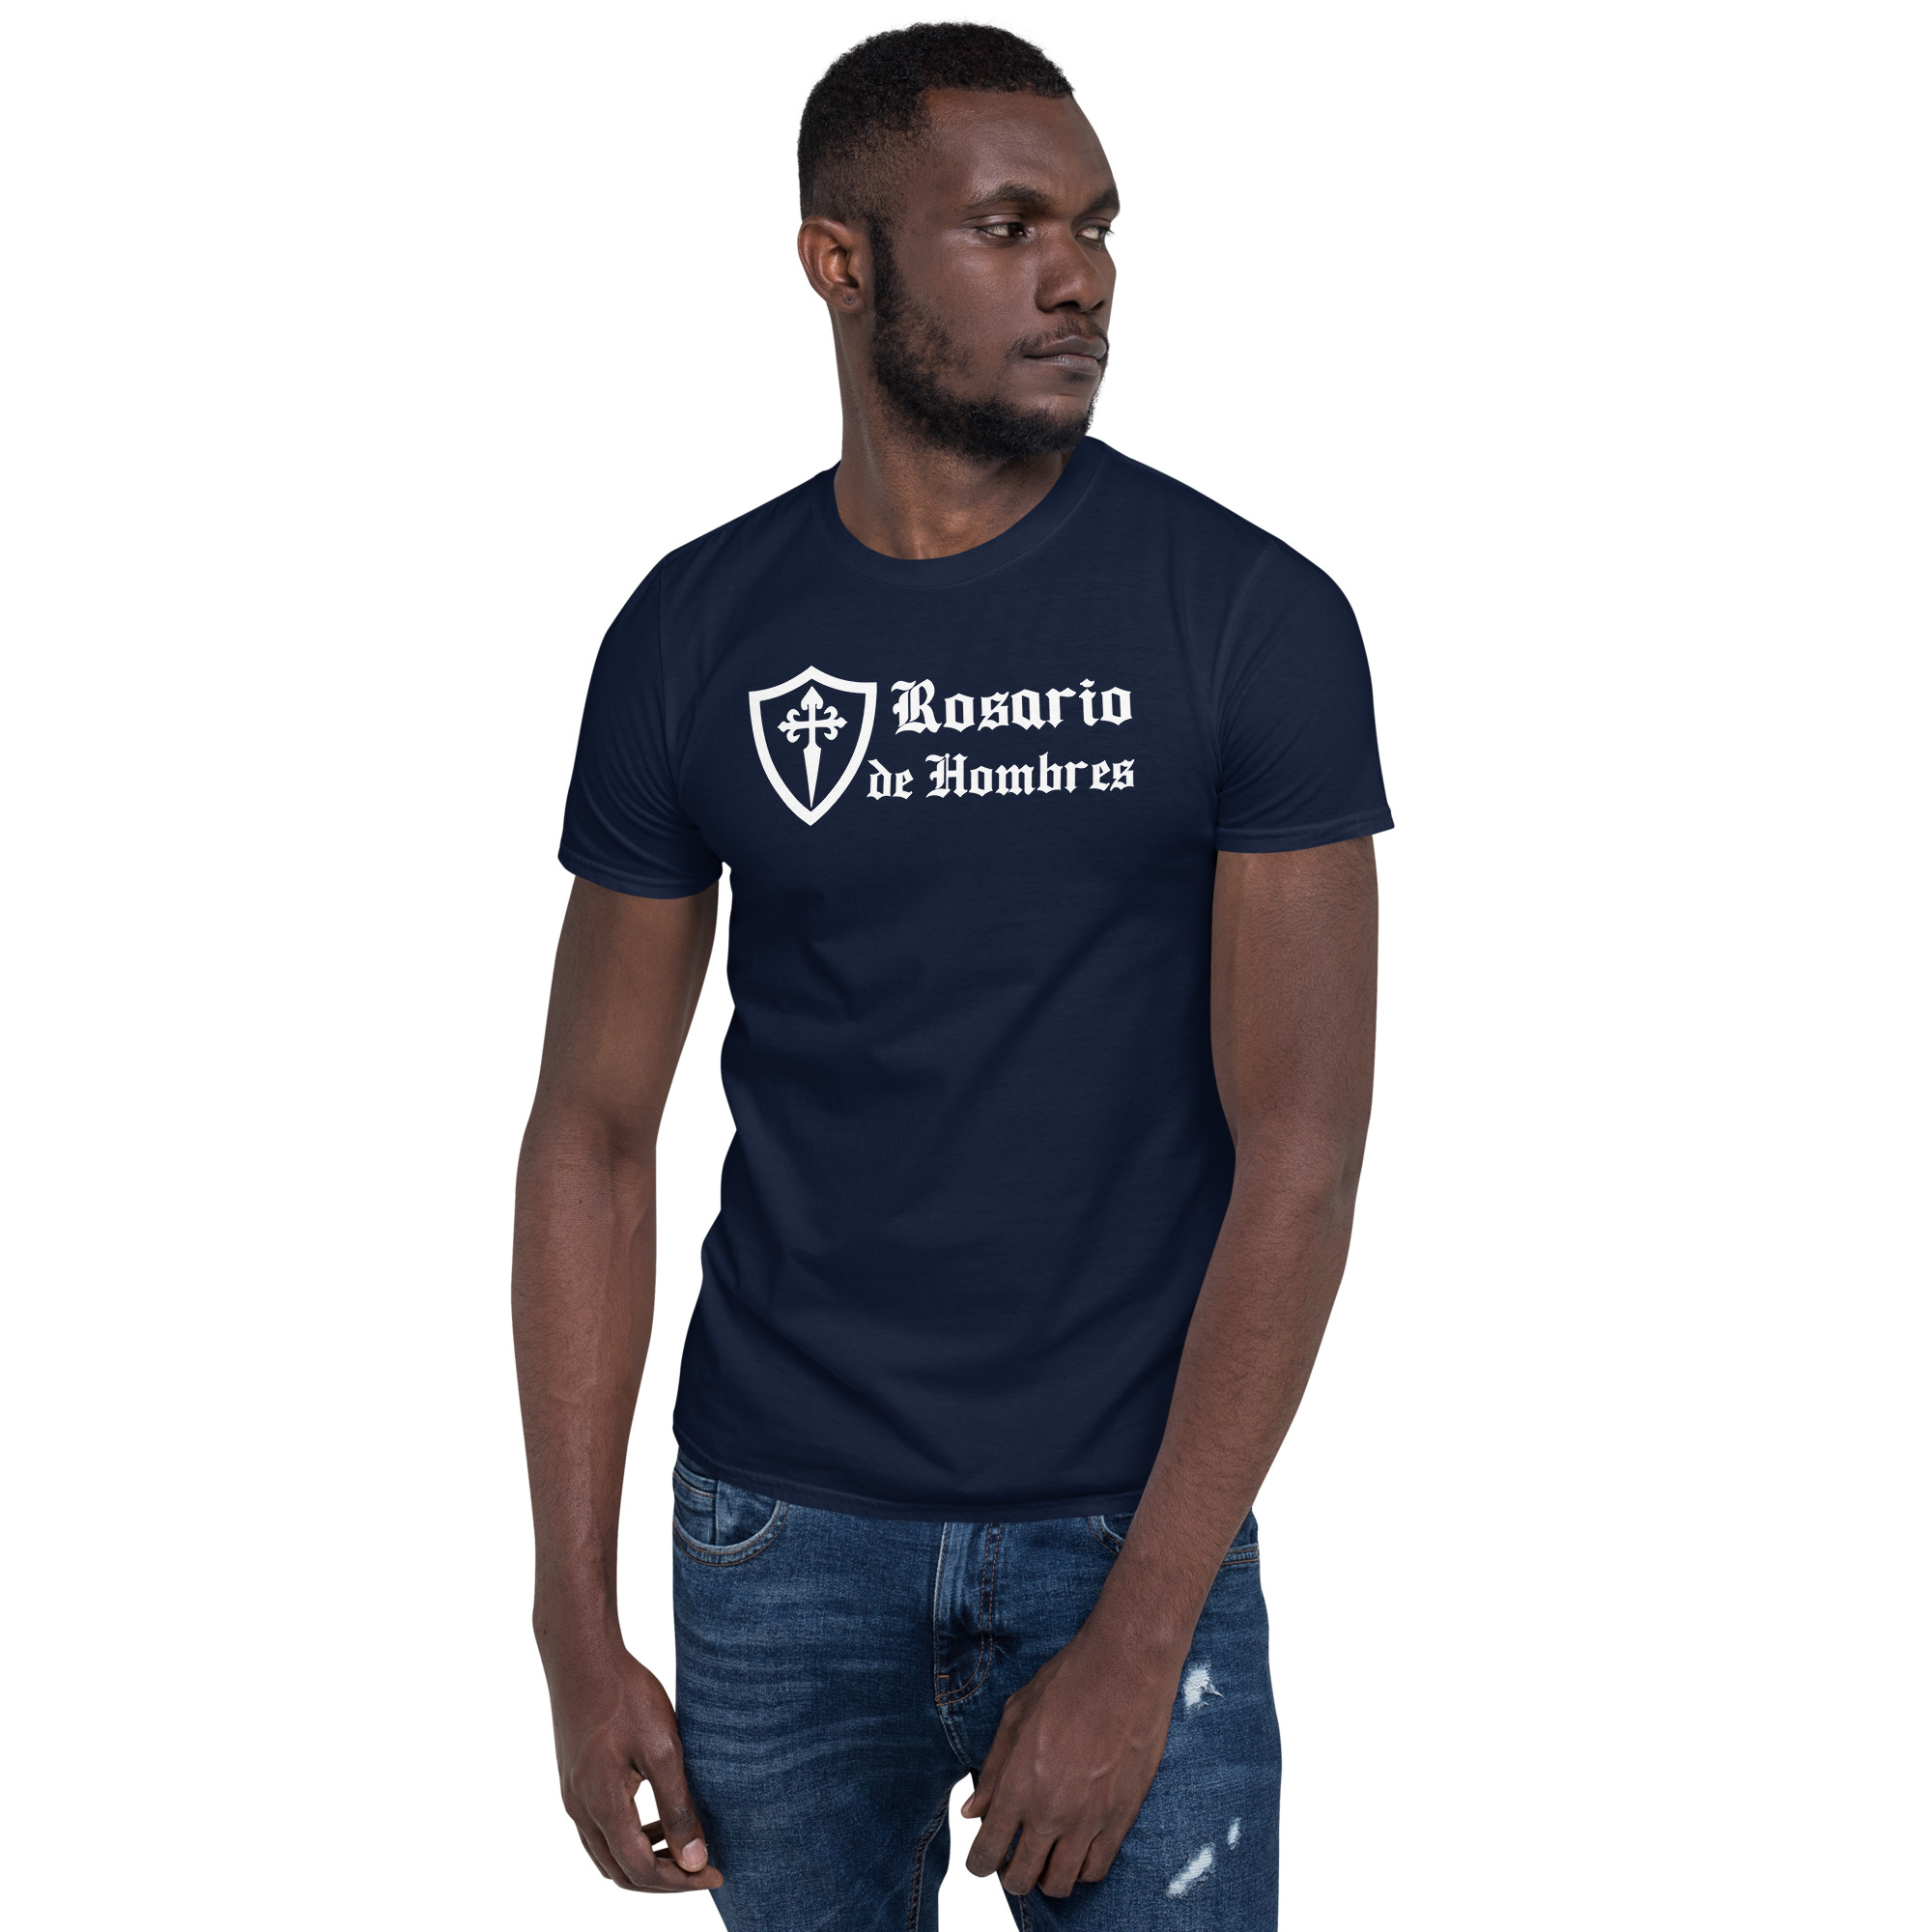 Rosario de Hombres (Basic) con Cruz de San Santiago Short-Sleeve Unisex T-Shirt